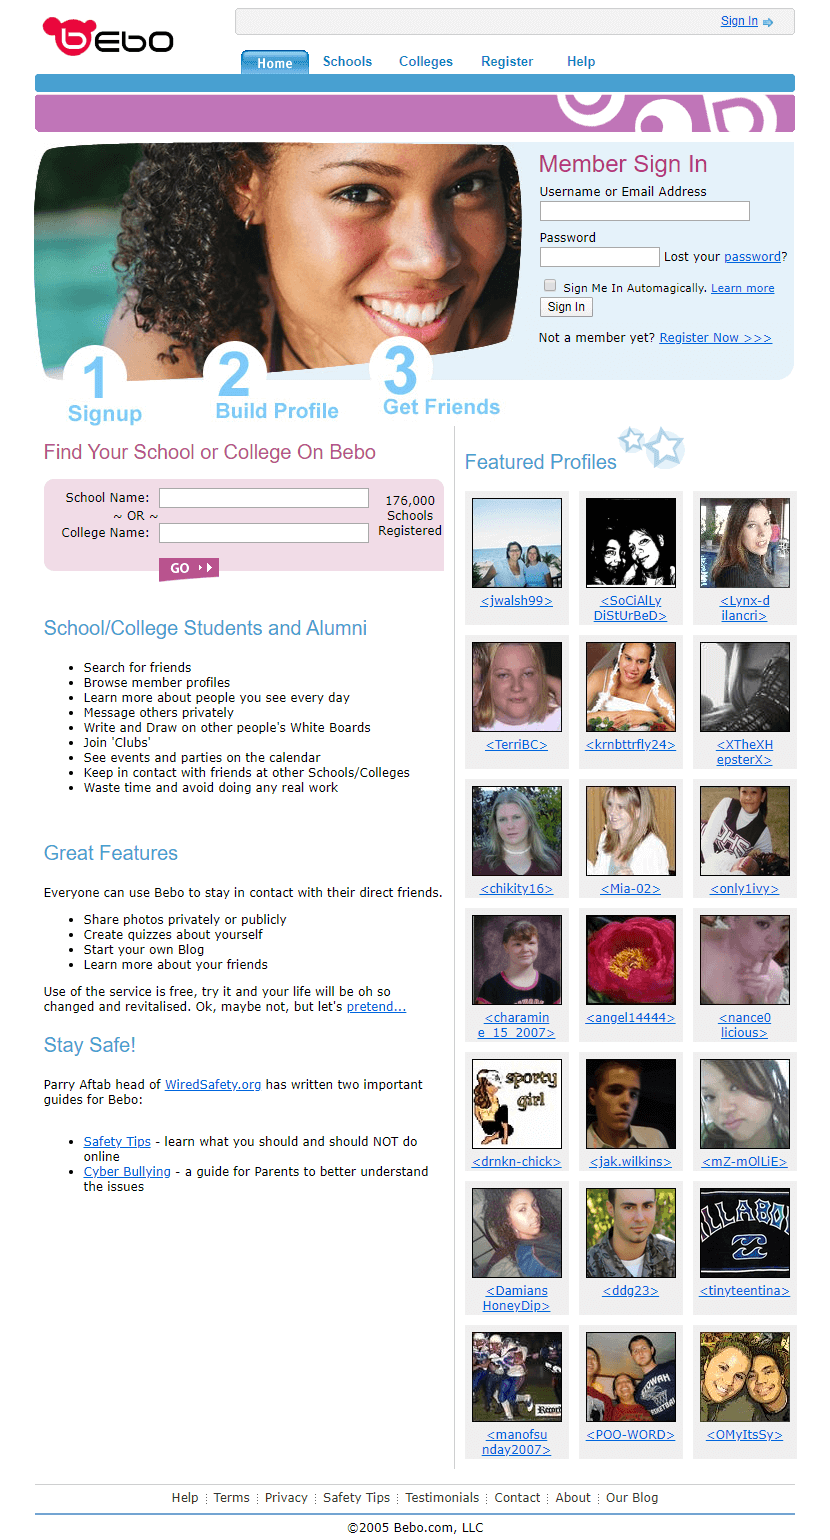 Bebo website in 2005